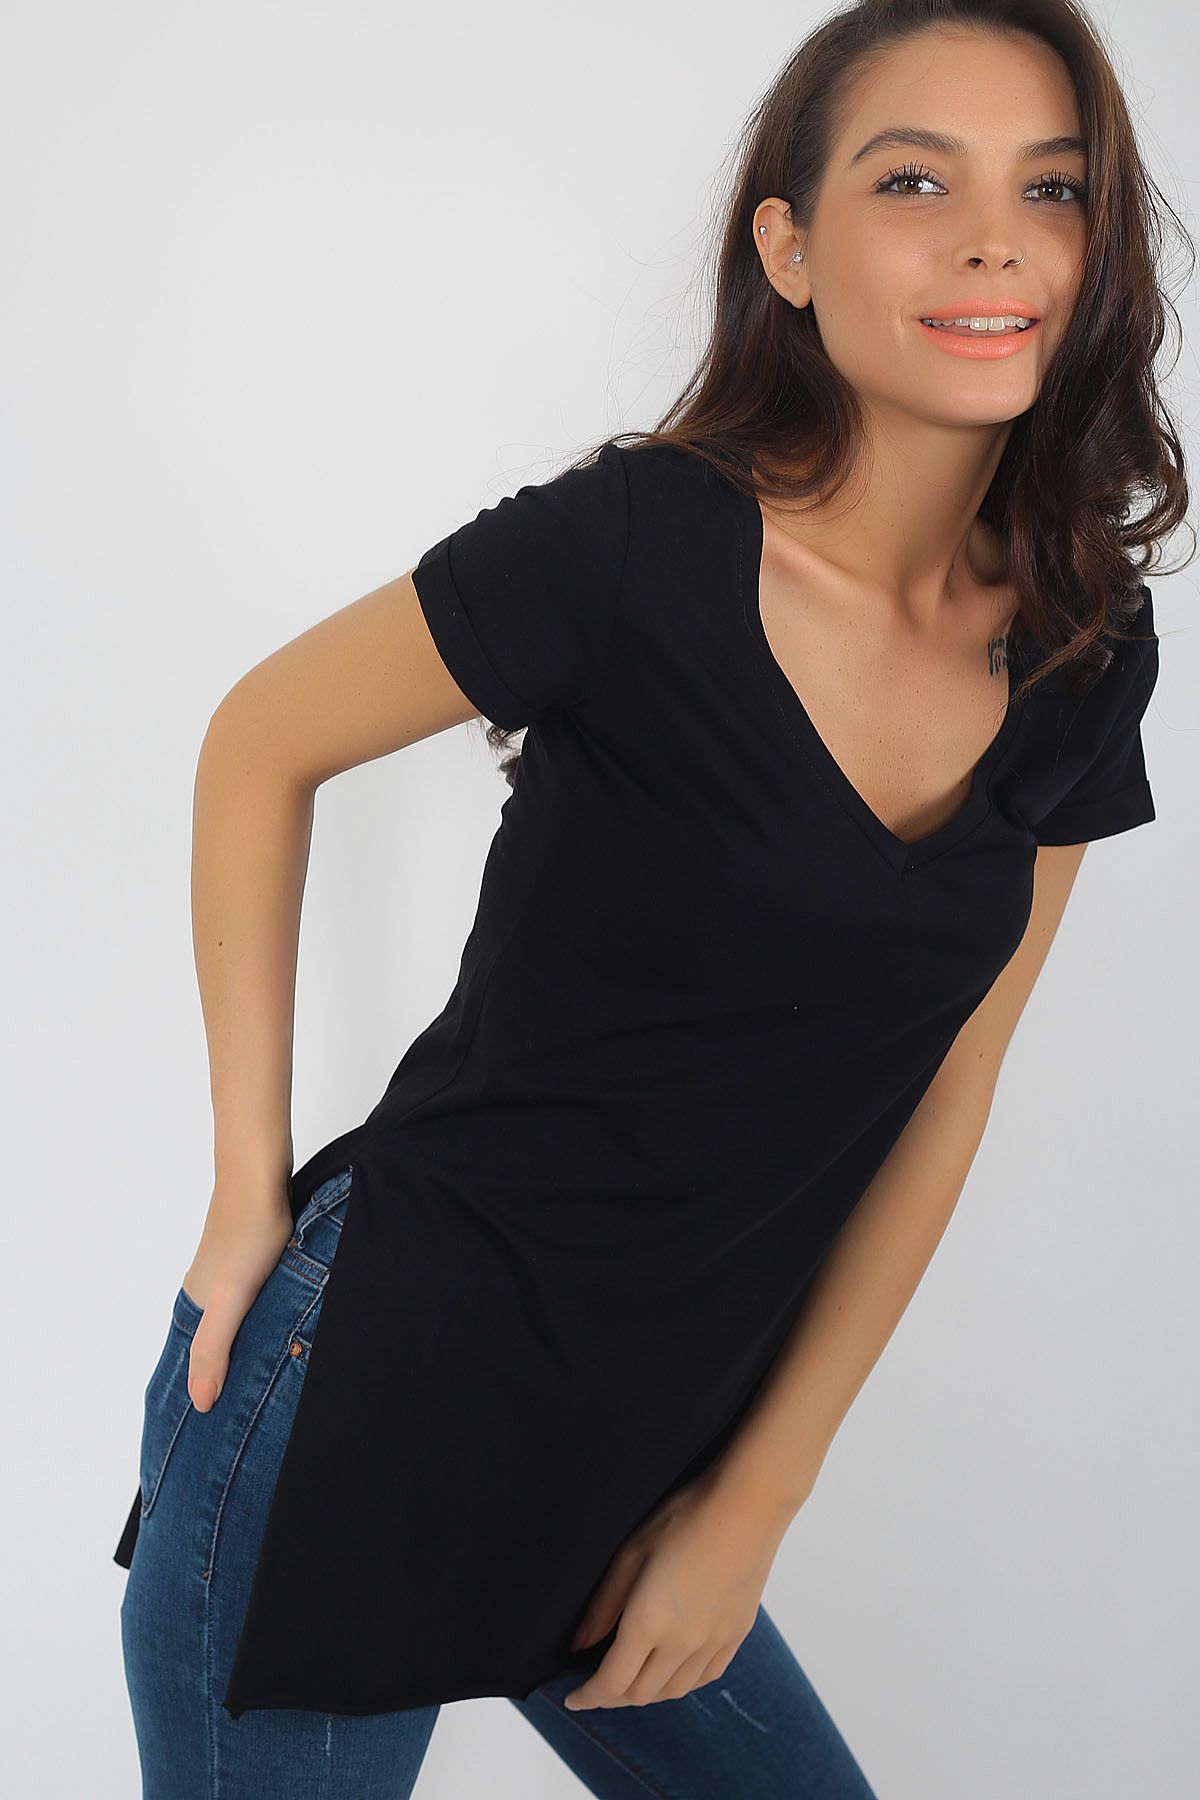 By Saygı Kadın Siyah Kolu Katlamalı Yanları Yarı Dikişsiz Yaka Pamuklu T-Shirt S-18K0420010